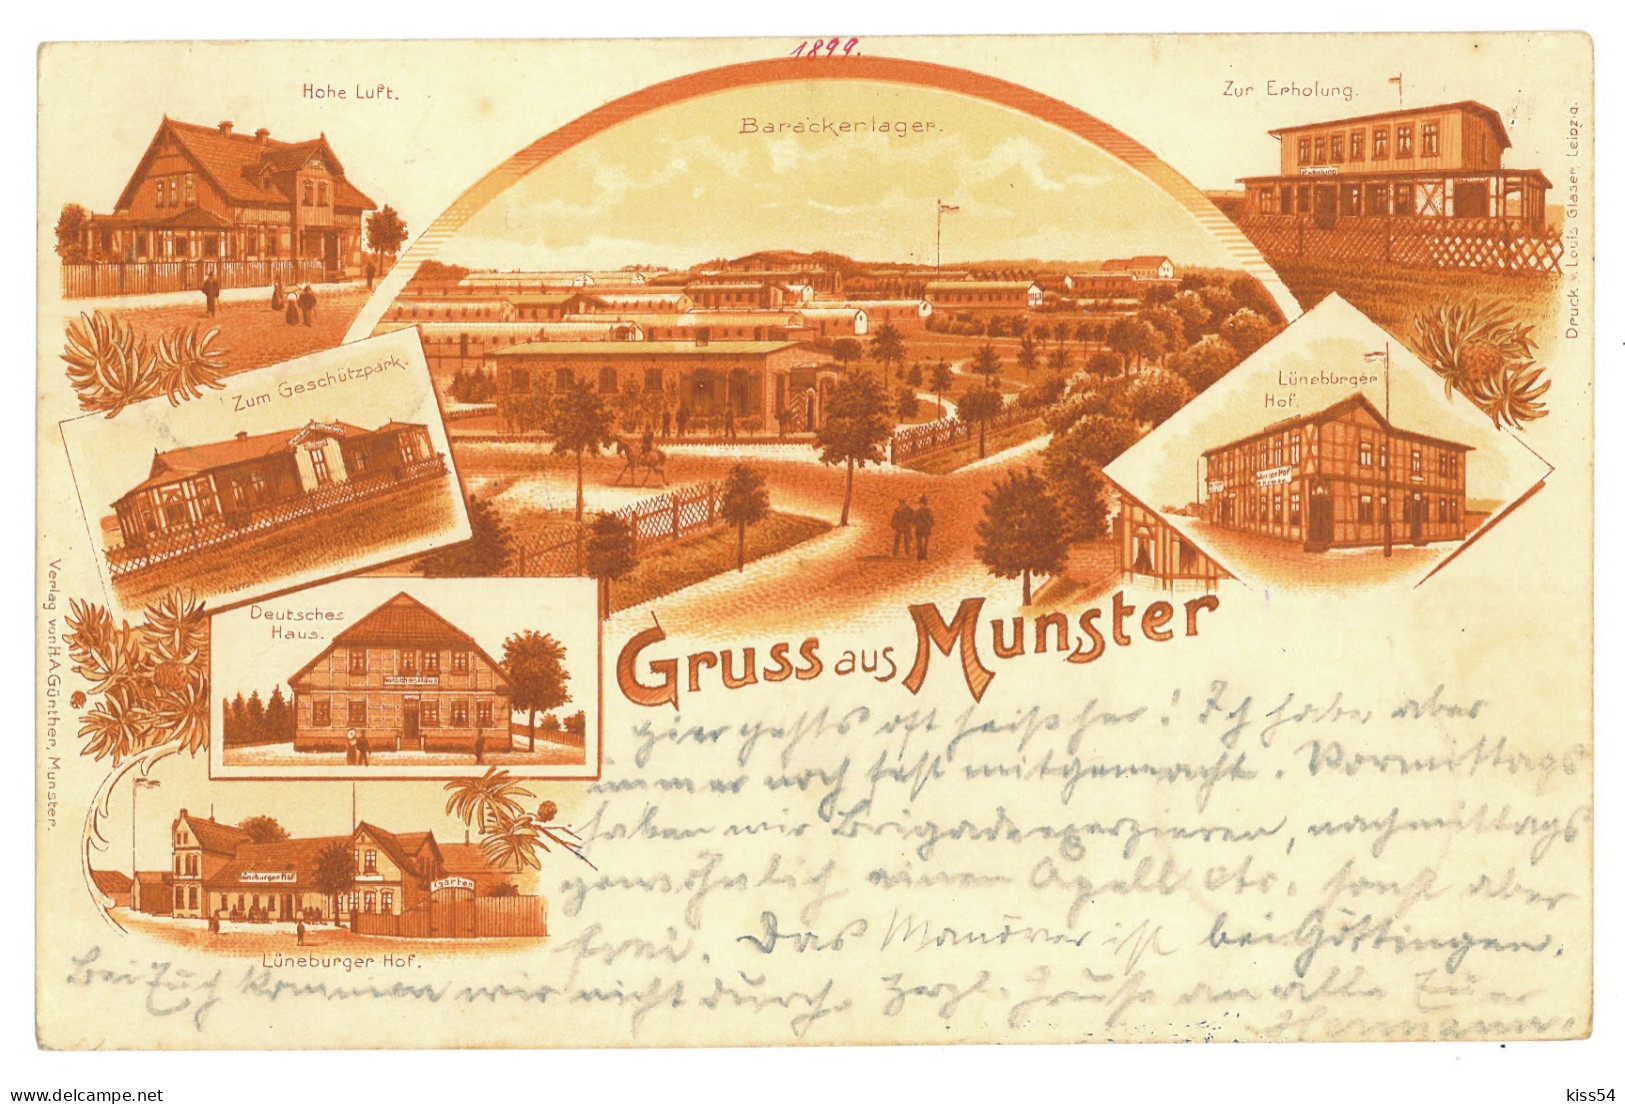 GER 35 - 16991 MUNSTER, Litho, Germany - Old Postcard - Used - 1899 - Munster